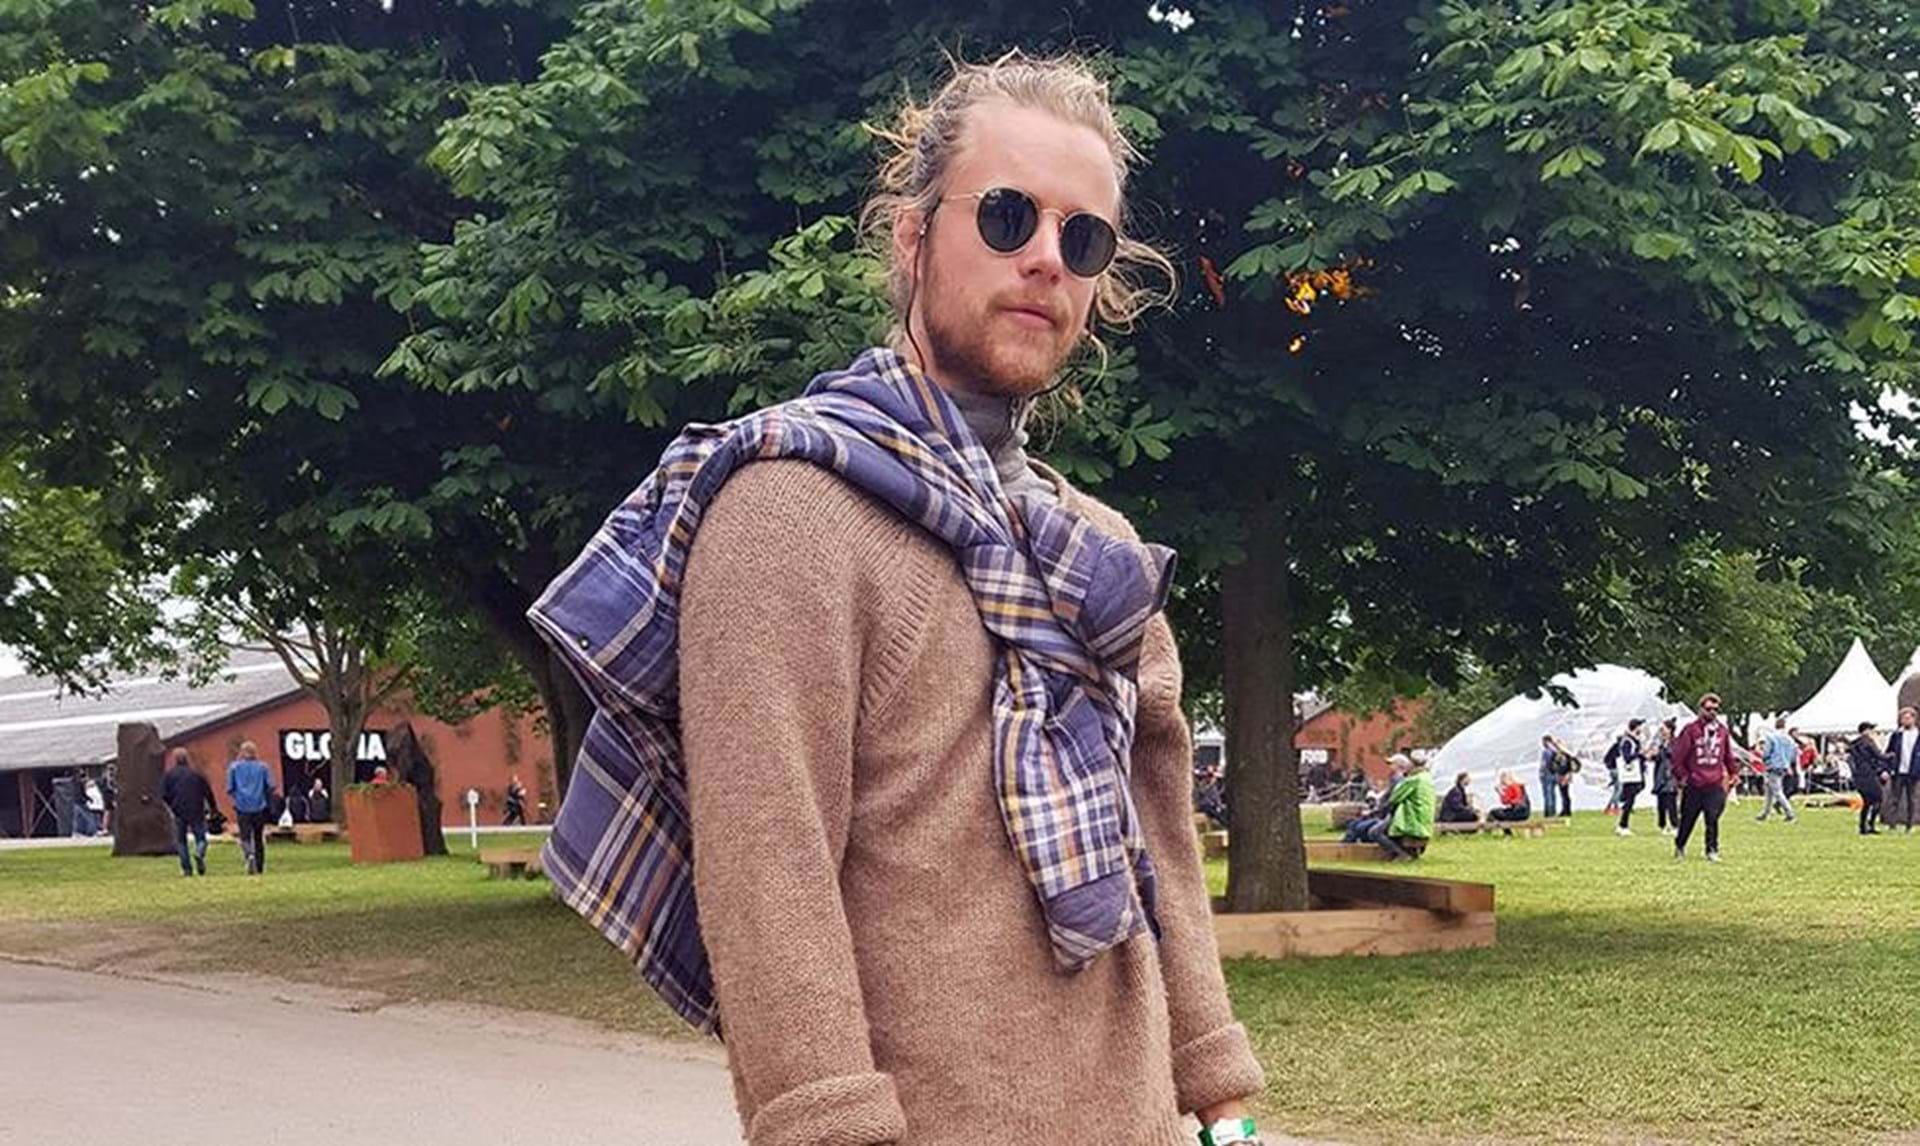 Stewart ø scaring Bolt Roskilde Festival 2017: Mænd, her er den festivalstil, kvinderne kan li' -  Euroman